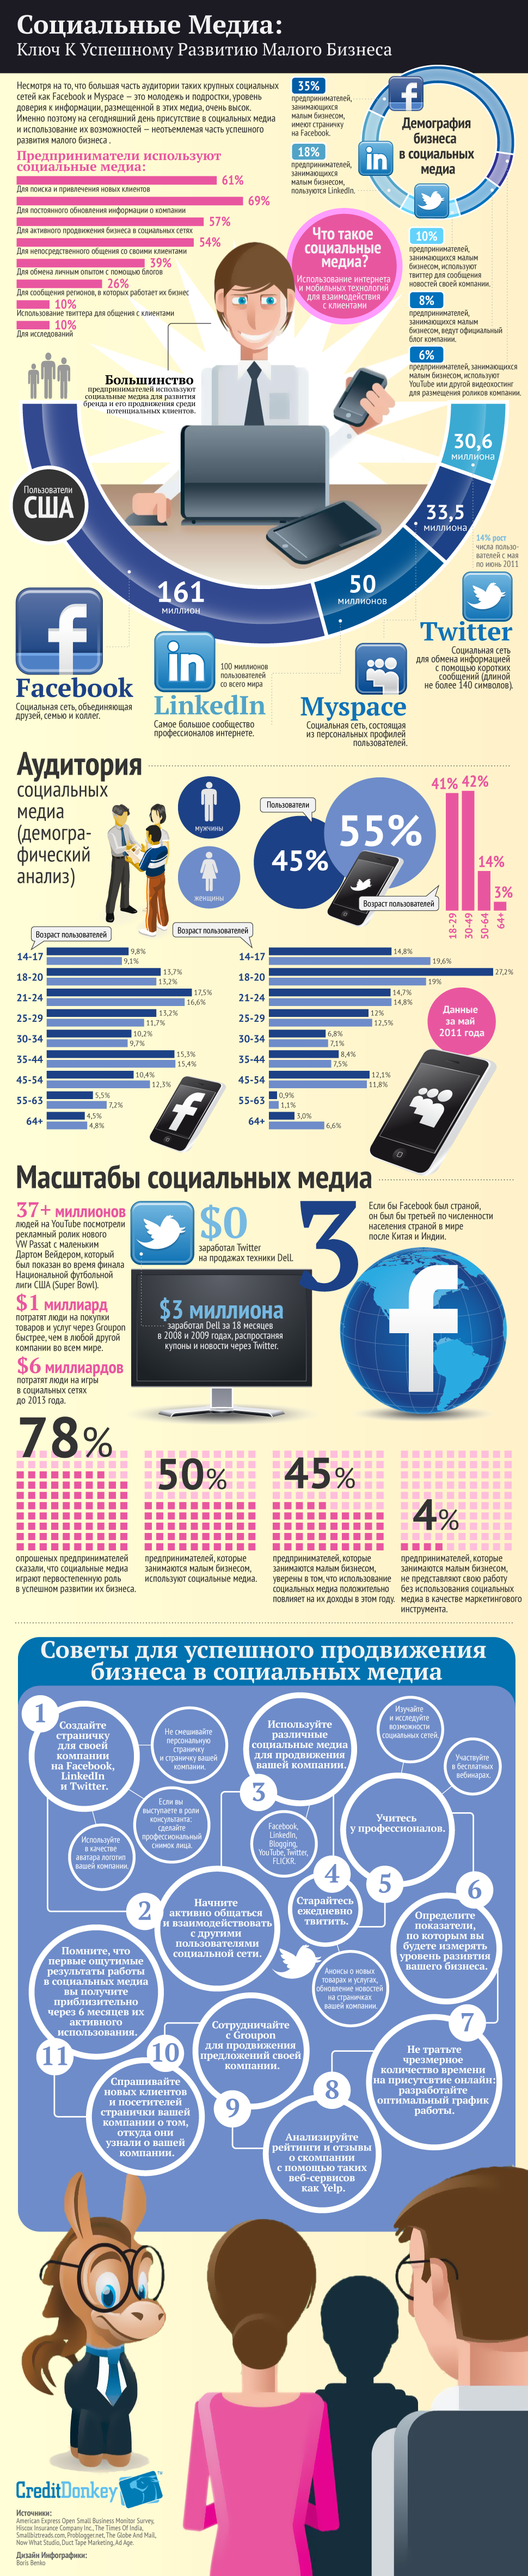 Инфографика: социальные медиа — ключ к успешному развитию малого бизнеса